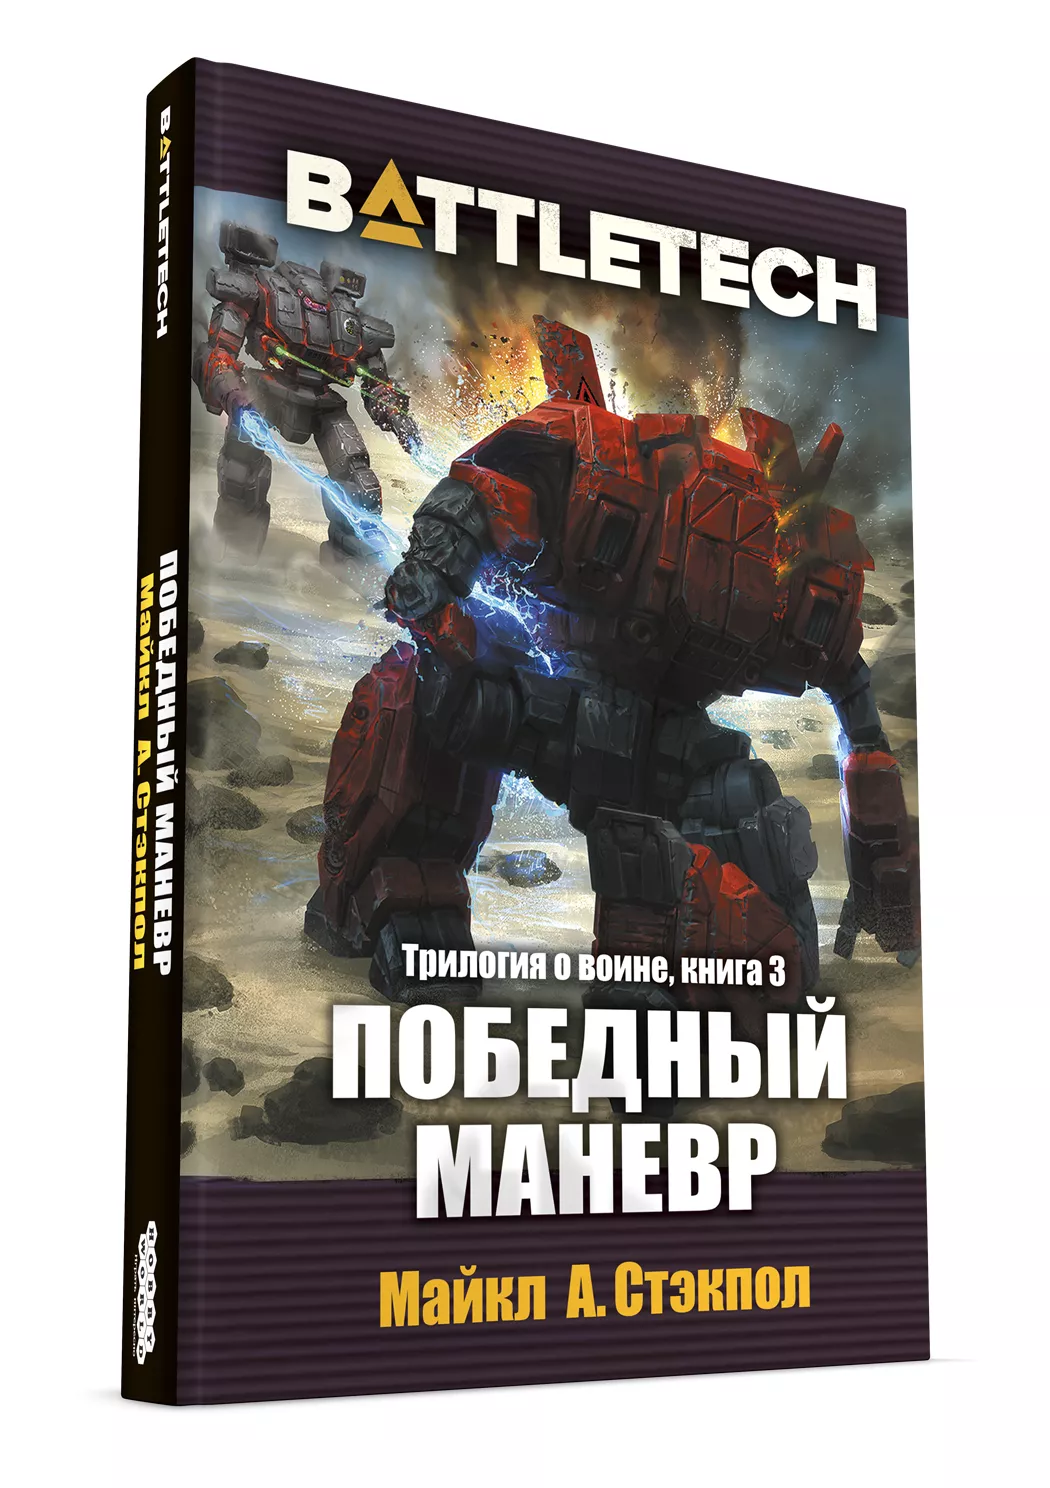 Трилогия о воине Майкла А. Стэкпоула — первое русское издание художественной классики BattleTech